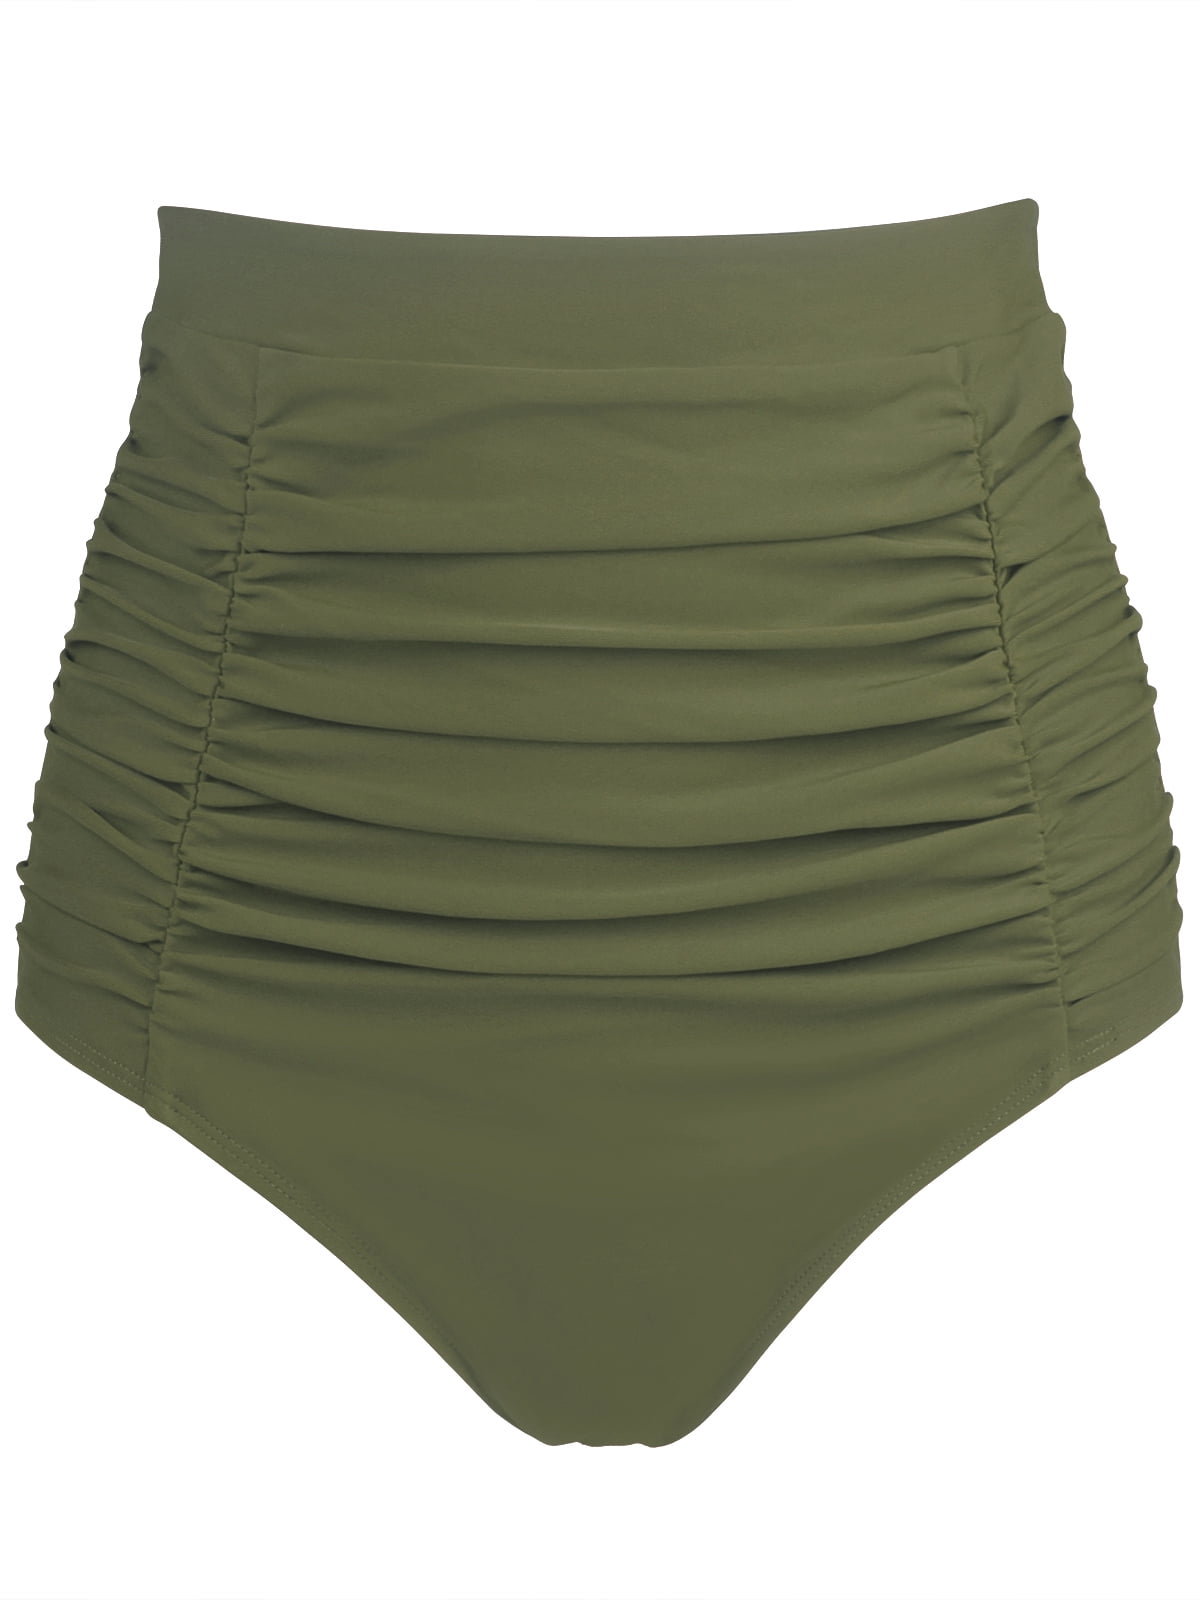 Olive Green Ruched Bikini Bottom